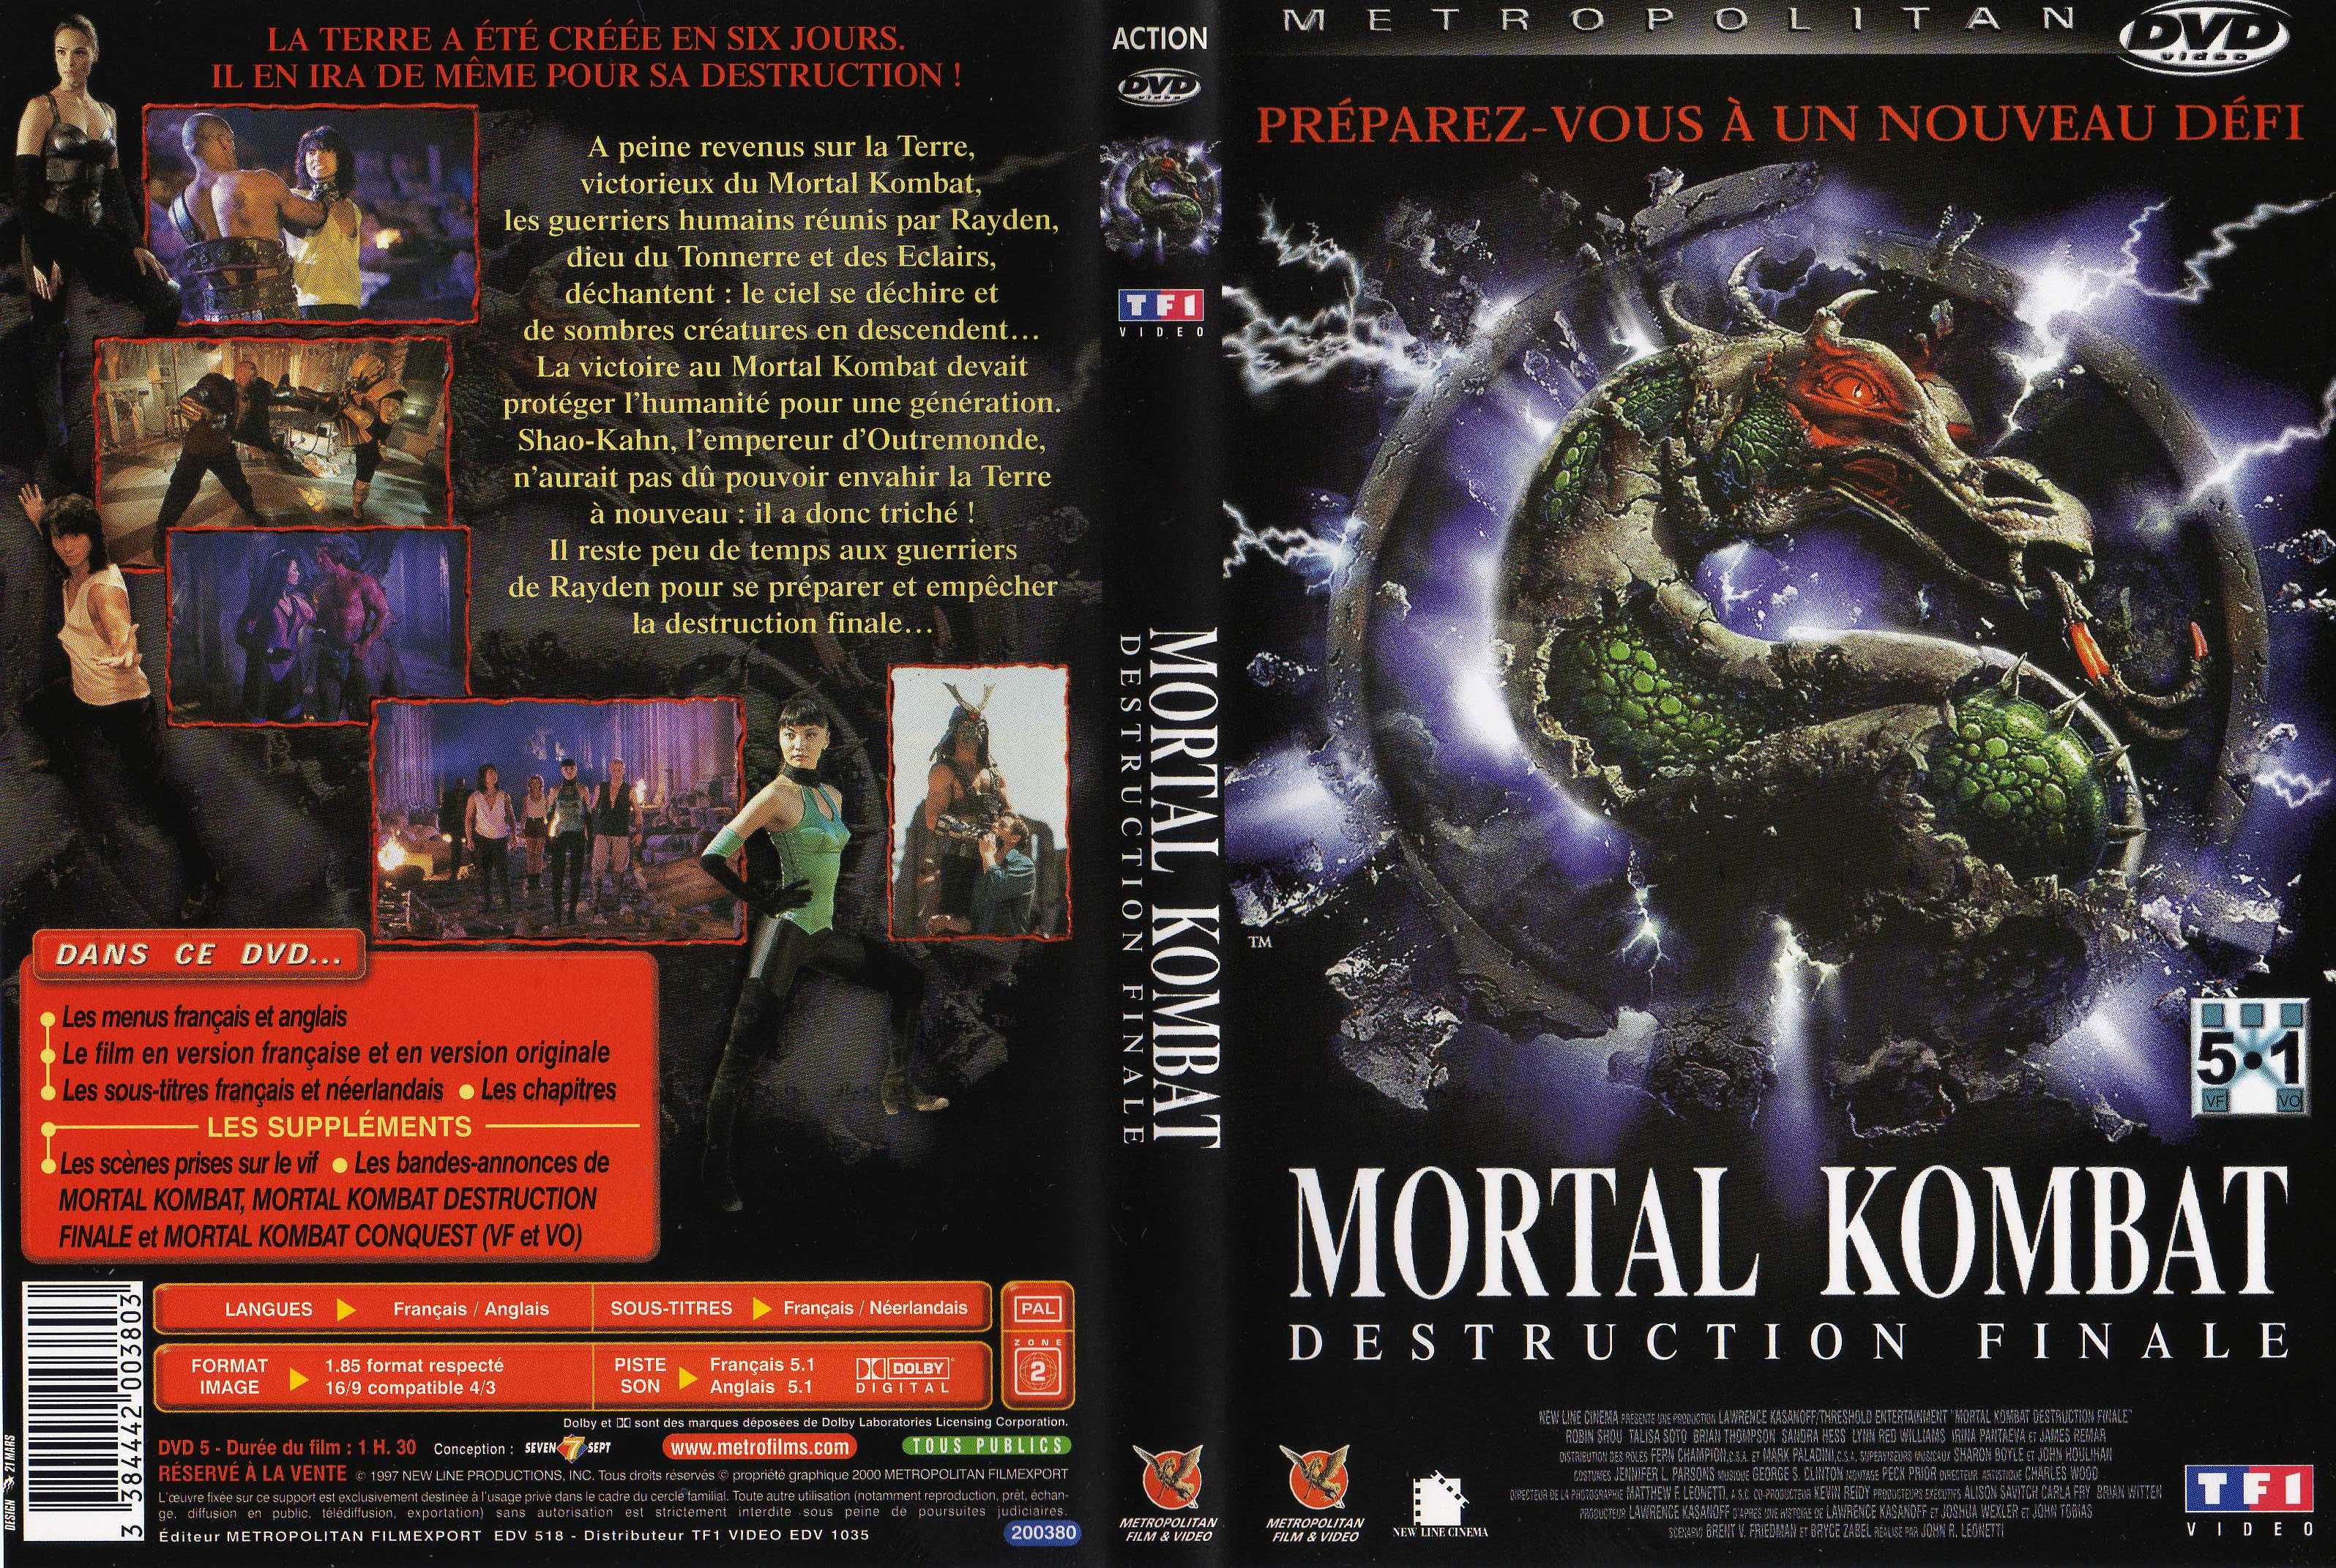 Jaquette DVD Mortal Kombat destruction finale